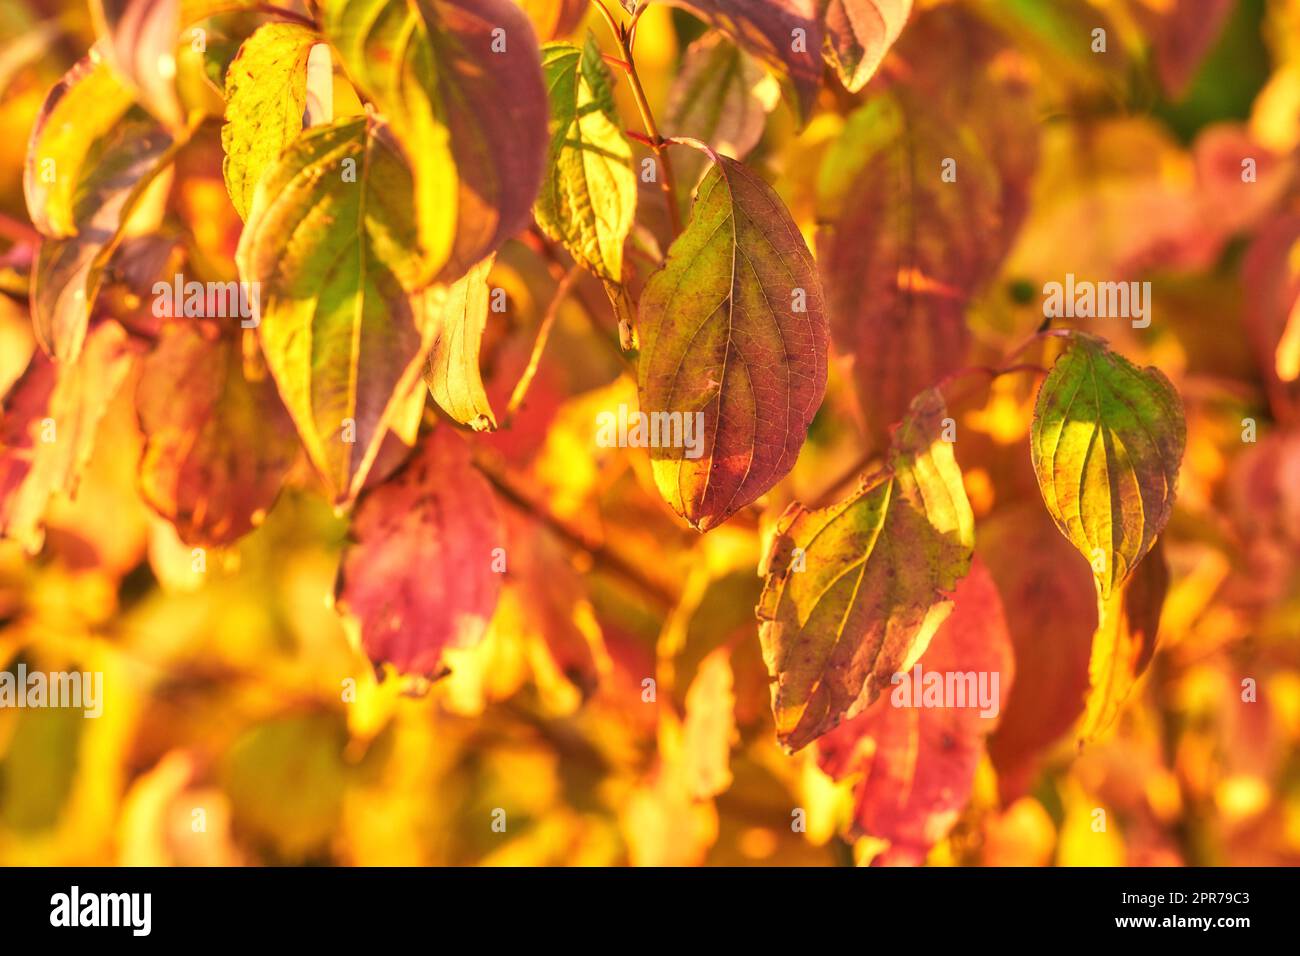 Nahaufnahme von bunten Herbstblättern, die in der Saison auf Baumstämmen wachsen, mit Kopierraum. Grüne, gelbe und braune Wildpflanzen, die im Herbst auf Stämmen in einem Naturwald, Park oder Garten wachsen Stockfoto